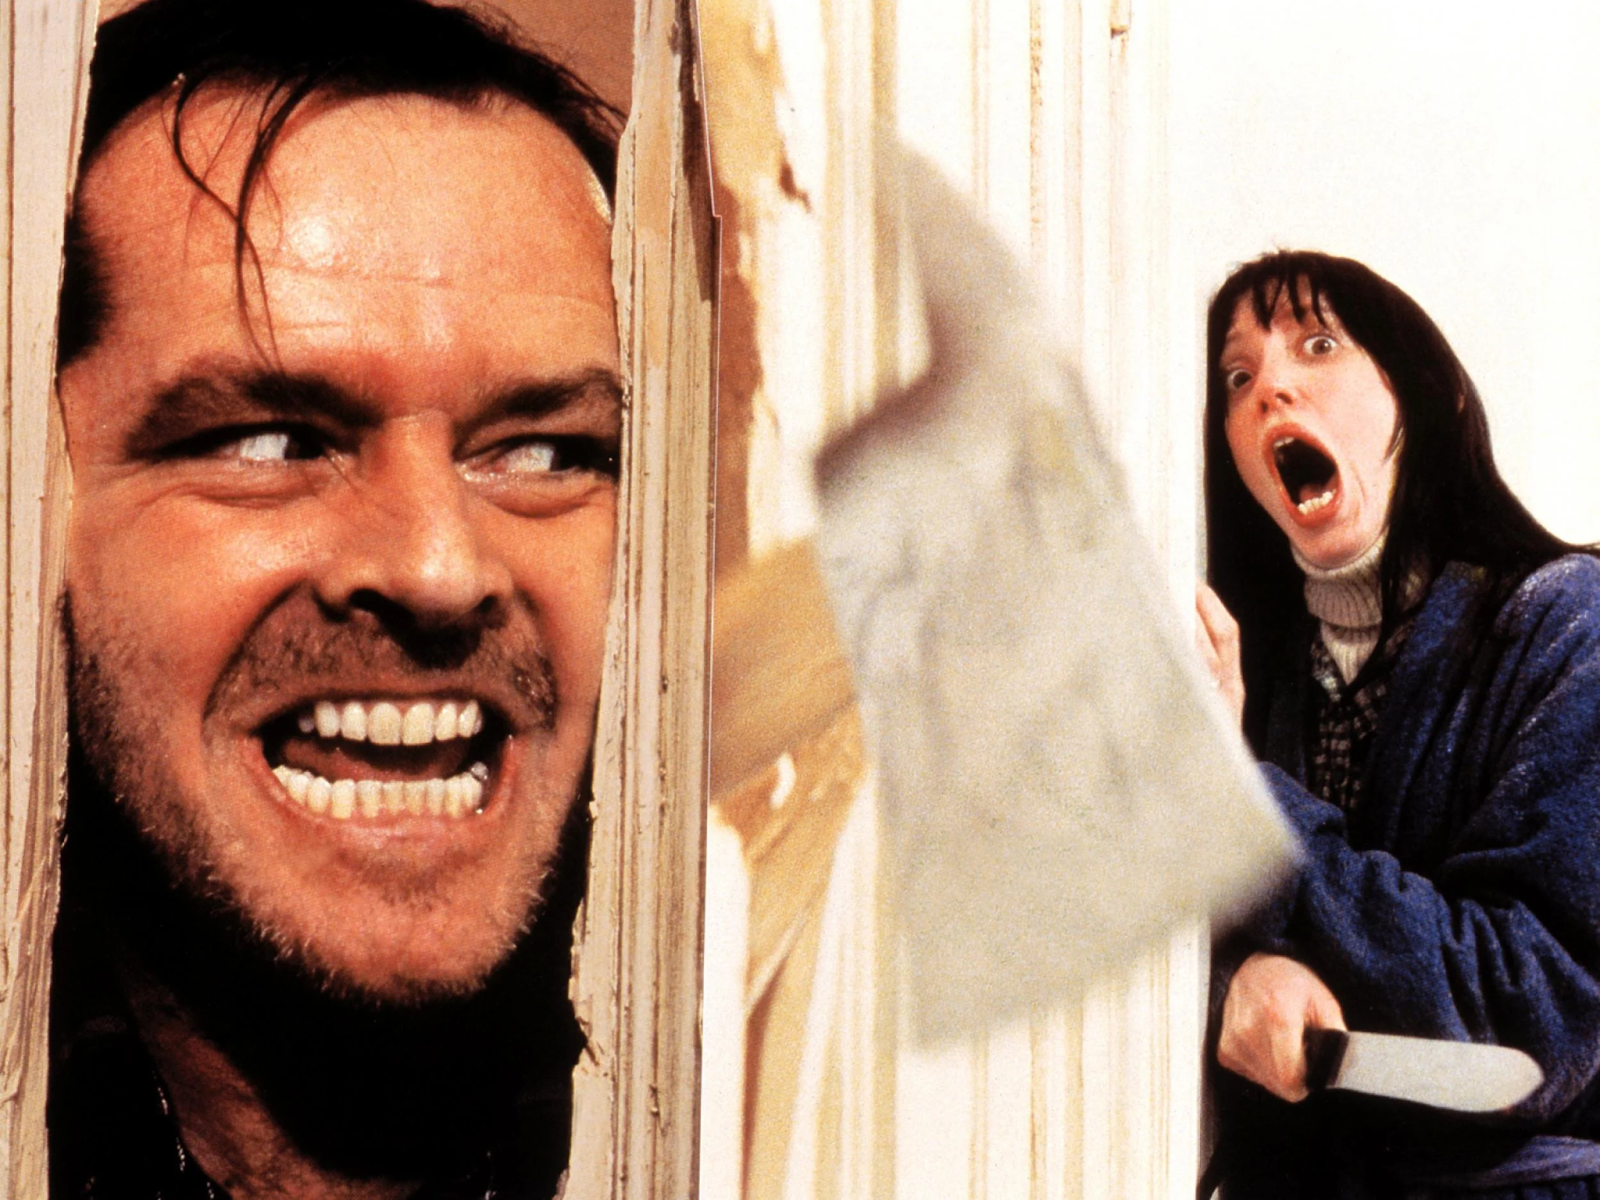 El actor Jack Nicholson y la actriz Shelley Duvall interpretando sus papeles en El Resplador. 

Wendy (Shelley Duvall) esta acurrucada contra la pared con un cuchillo en la mano y con la boca completamente abierta espantada. Jack atraviesa la pared desde el lado contrario, solo se ve su rostro.